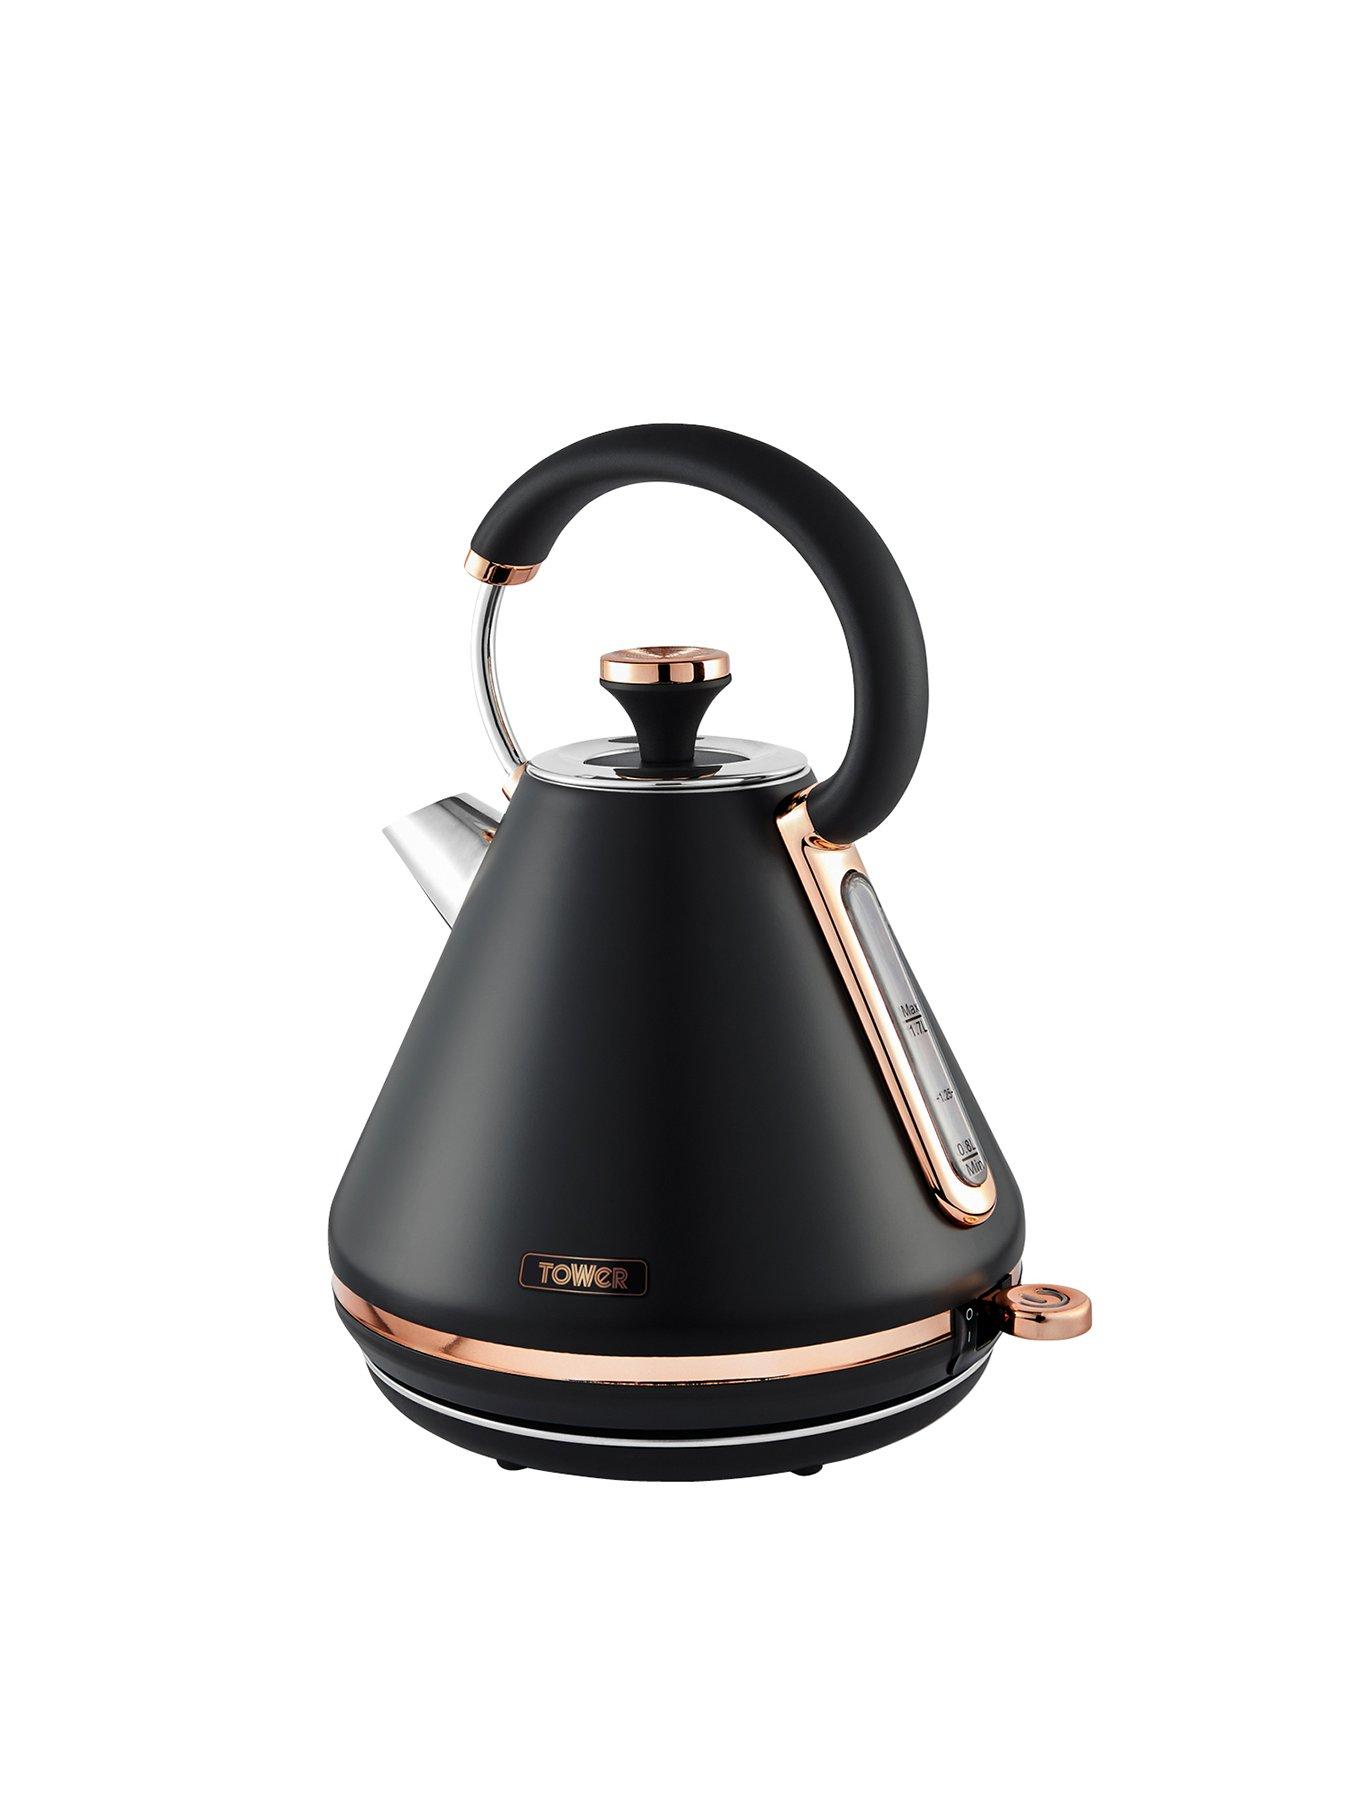 tower kitchen kettle